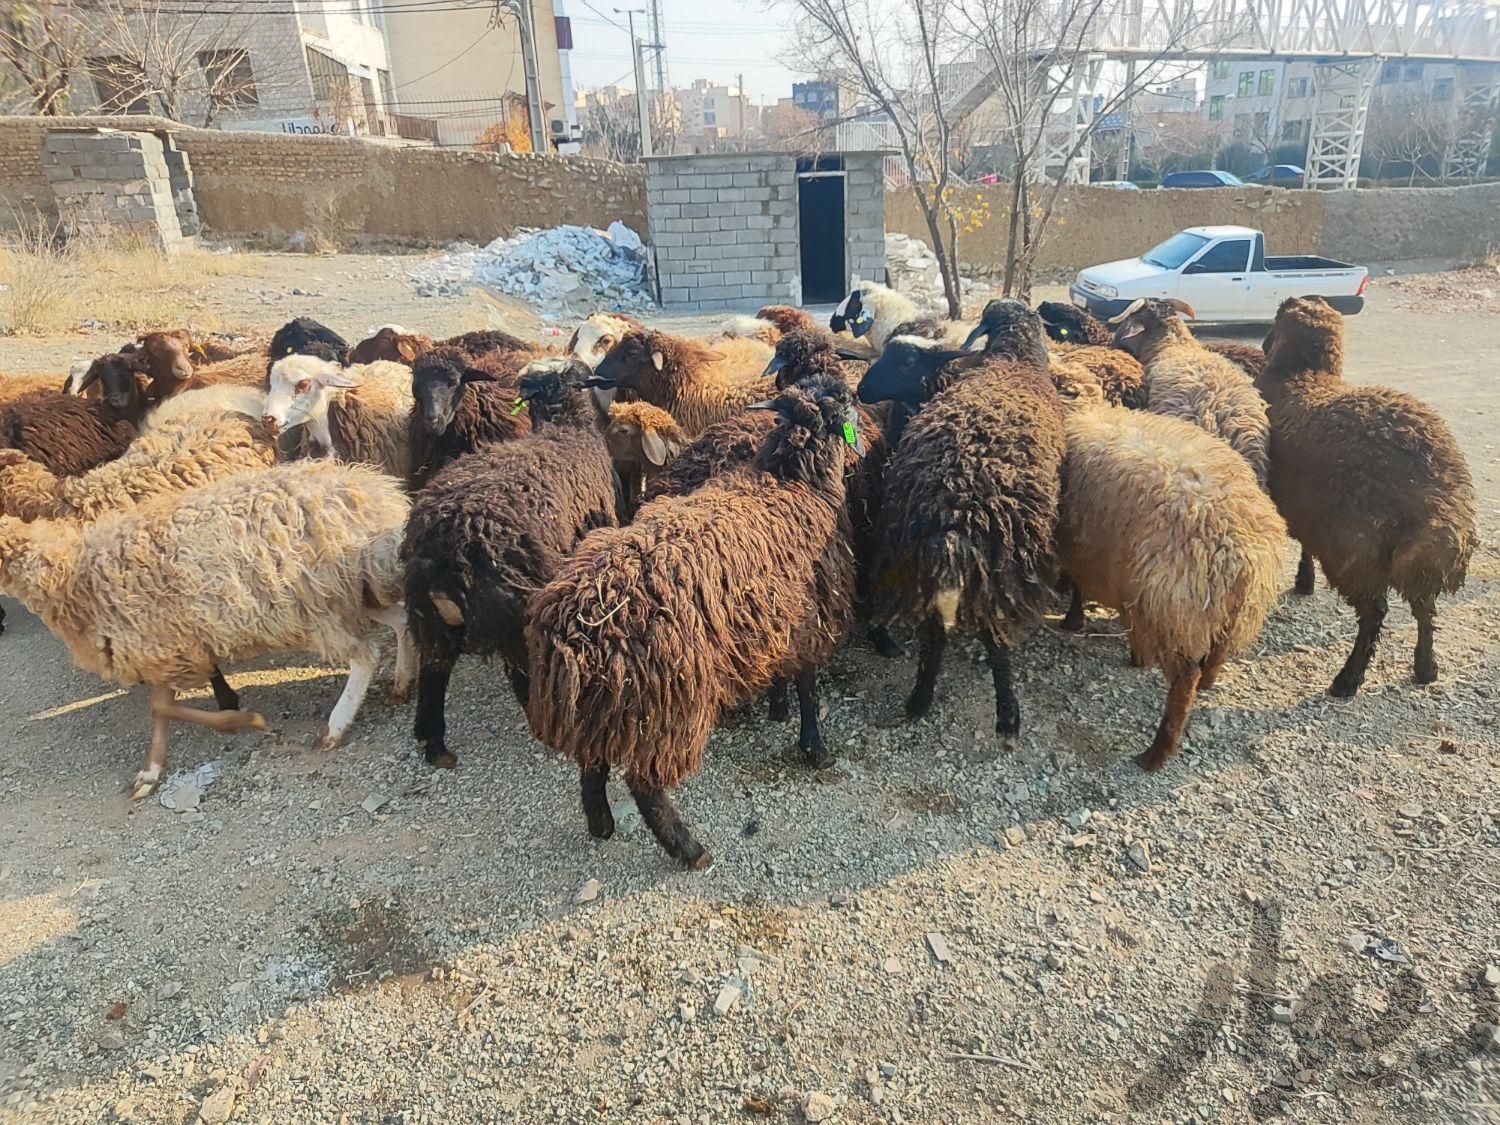 گوسفند زنده کردستانی افشاری مغانی جهت کشتارتهران|حیوانات مزرعه|تهران, دهکده المپیک|دیوار